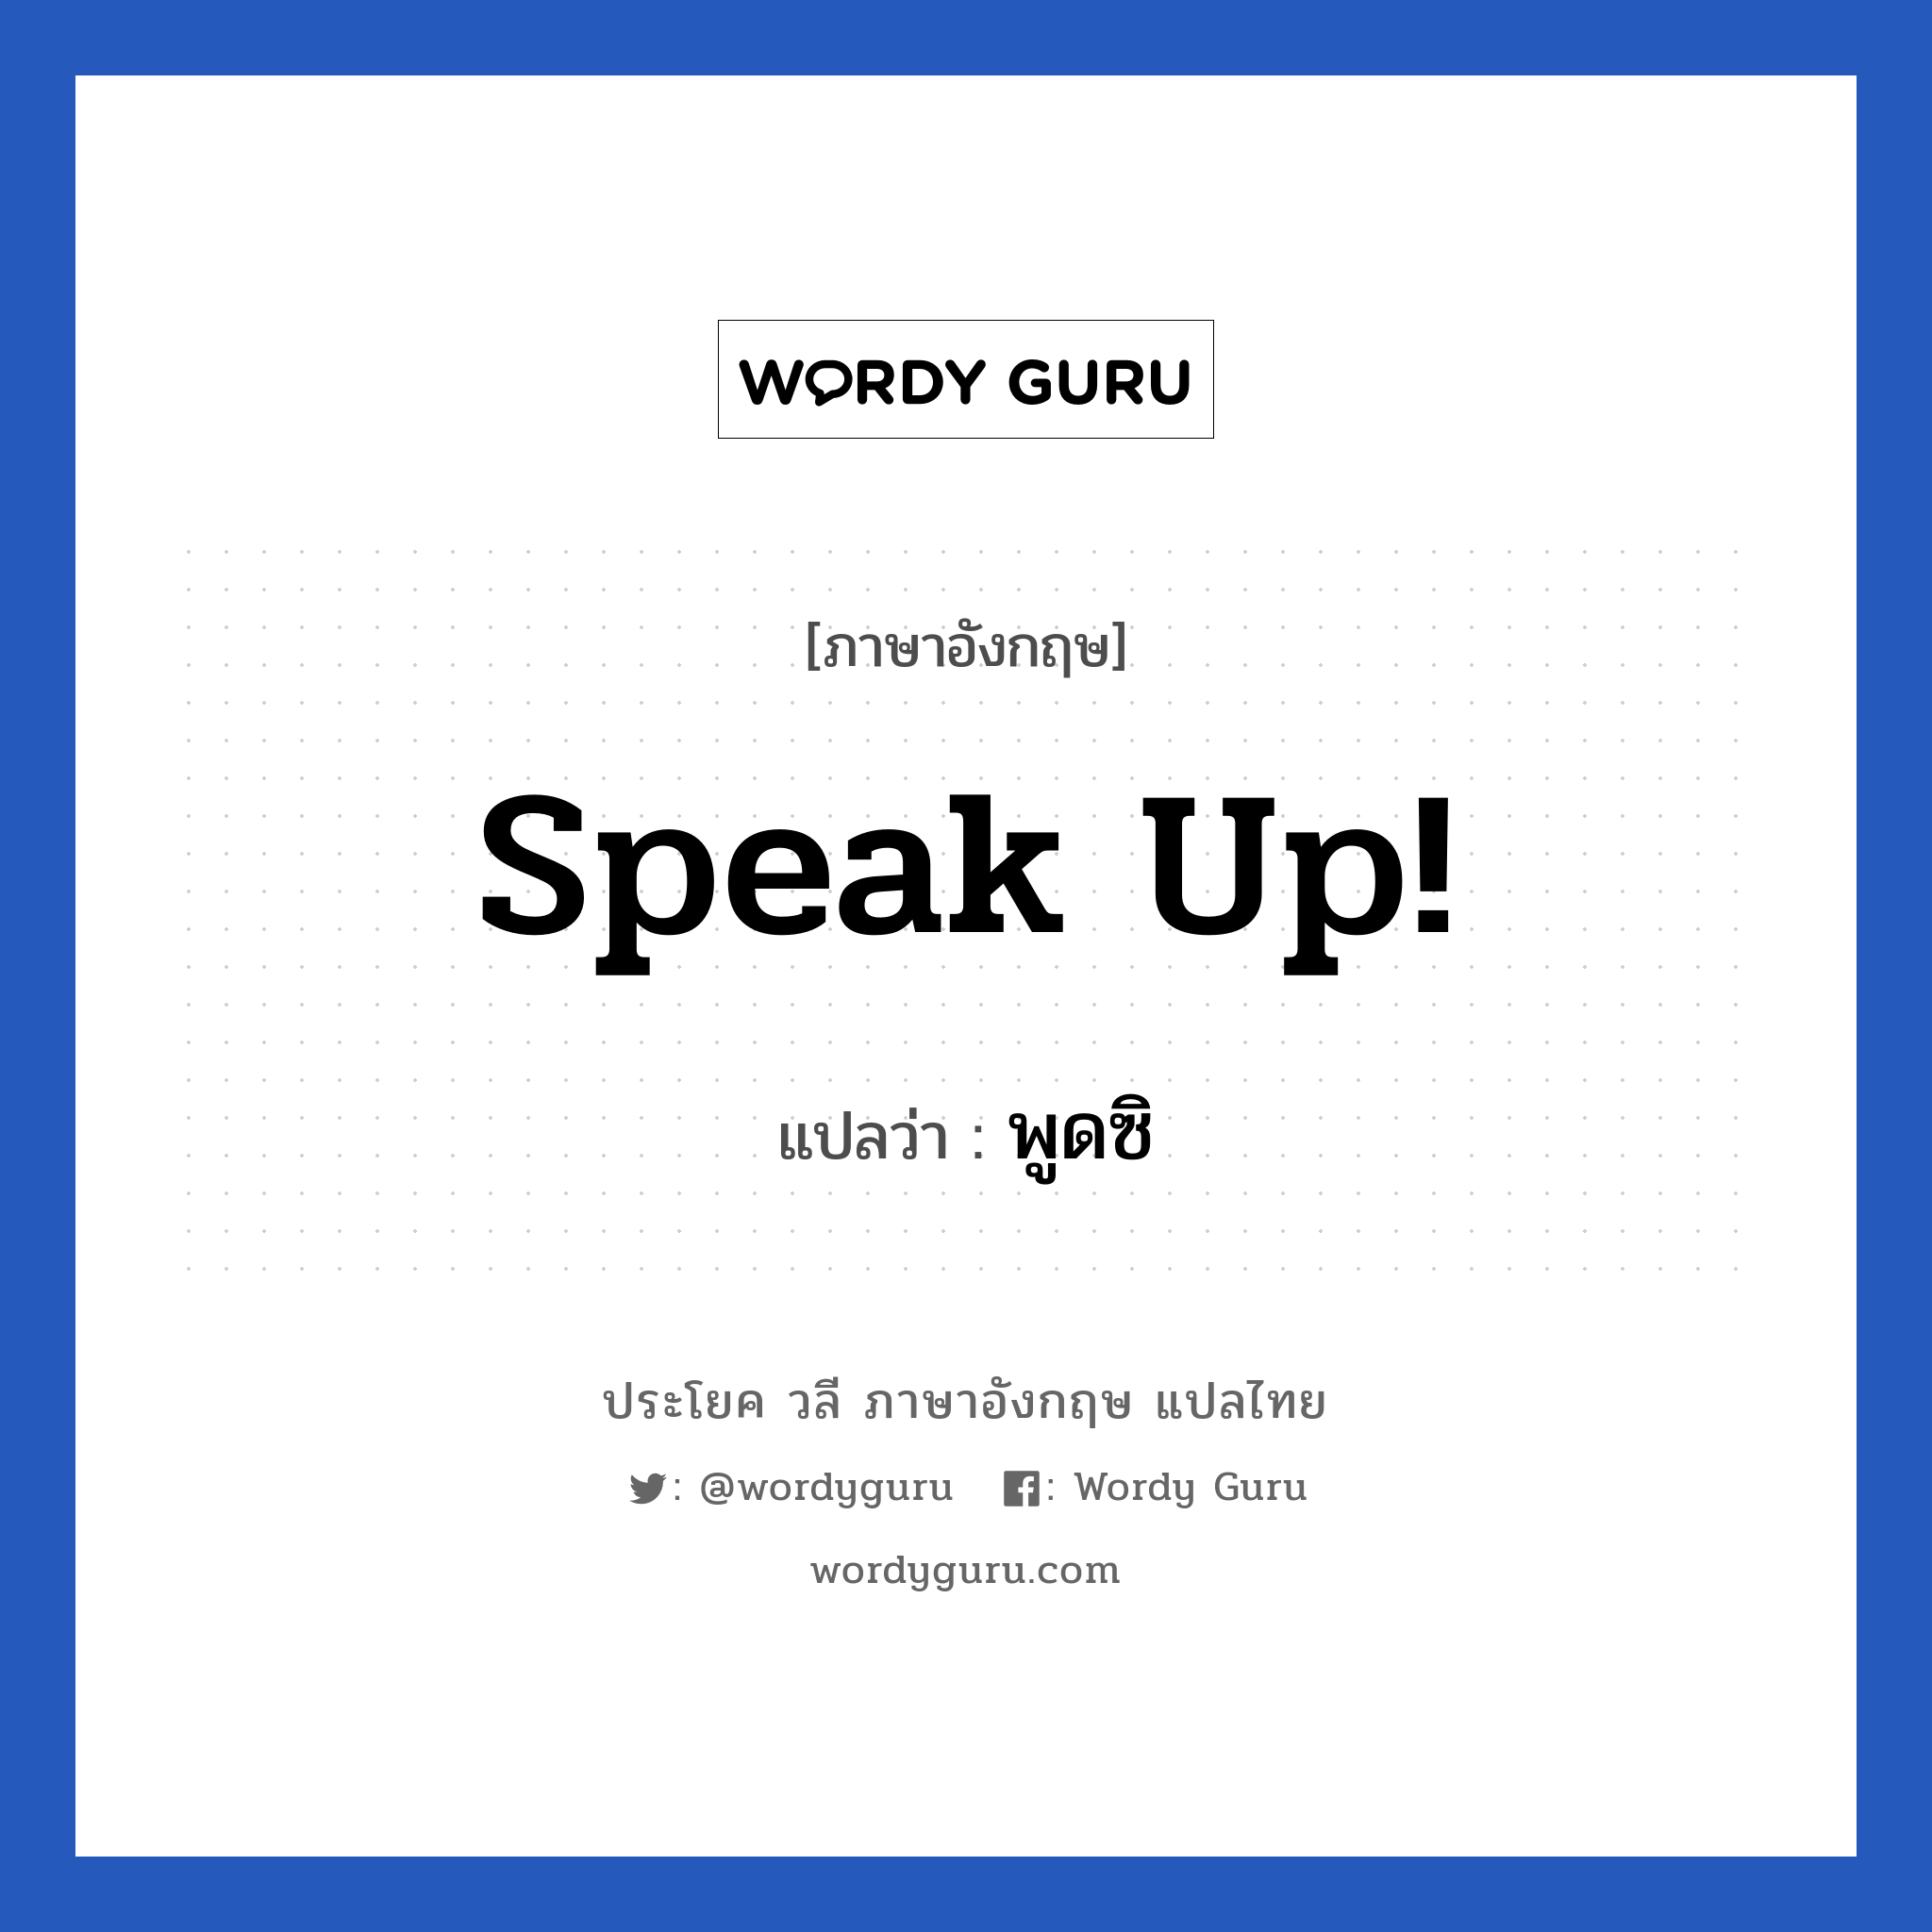 Speak up! แปลว่า?, วลีภาษาอังกฤษ Speak up! แปลว่า พูดซิ